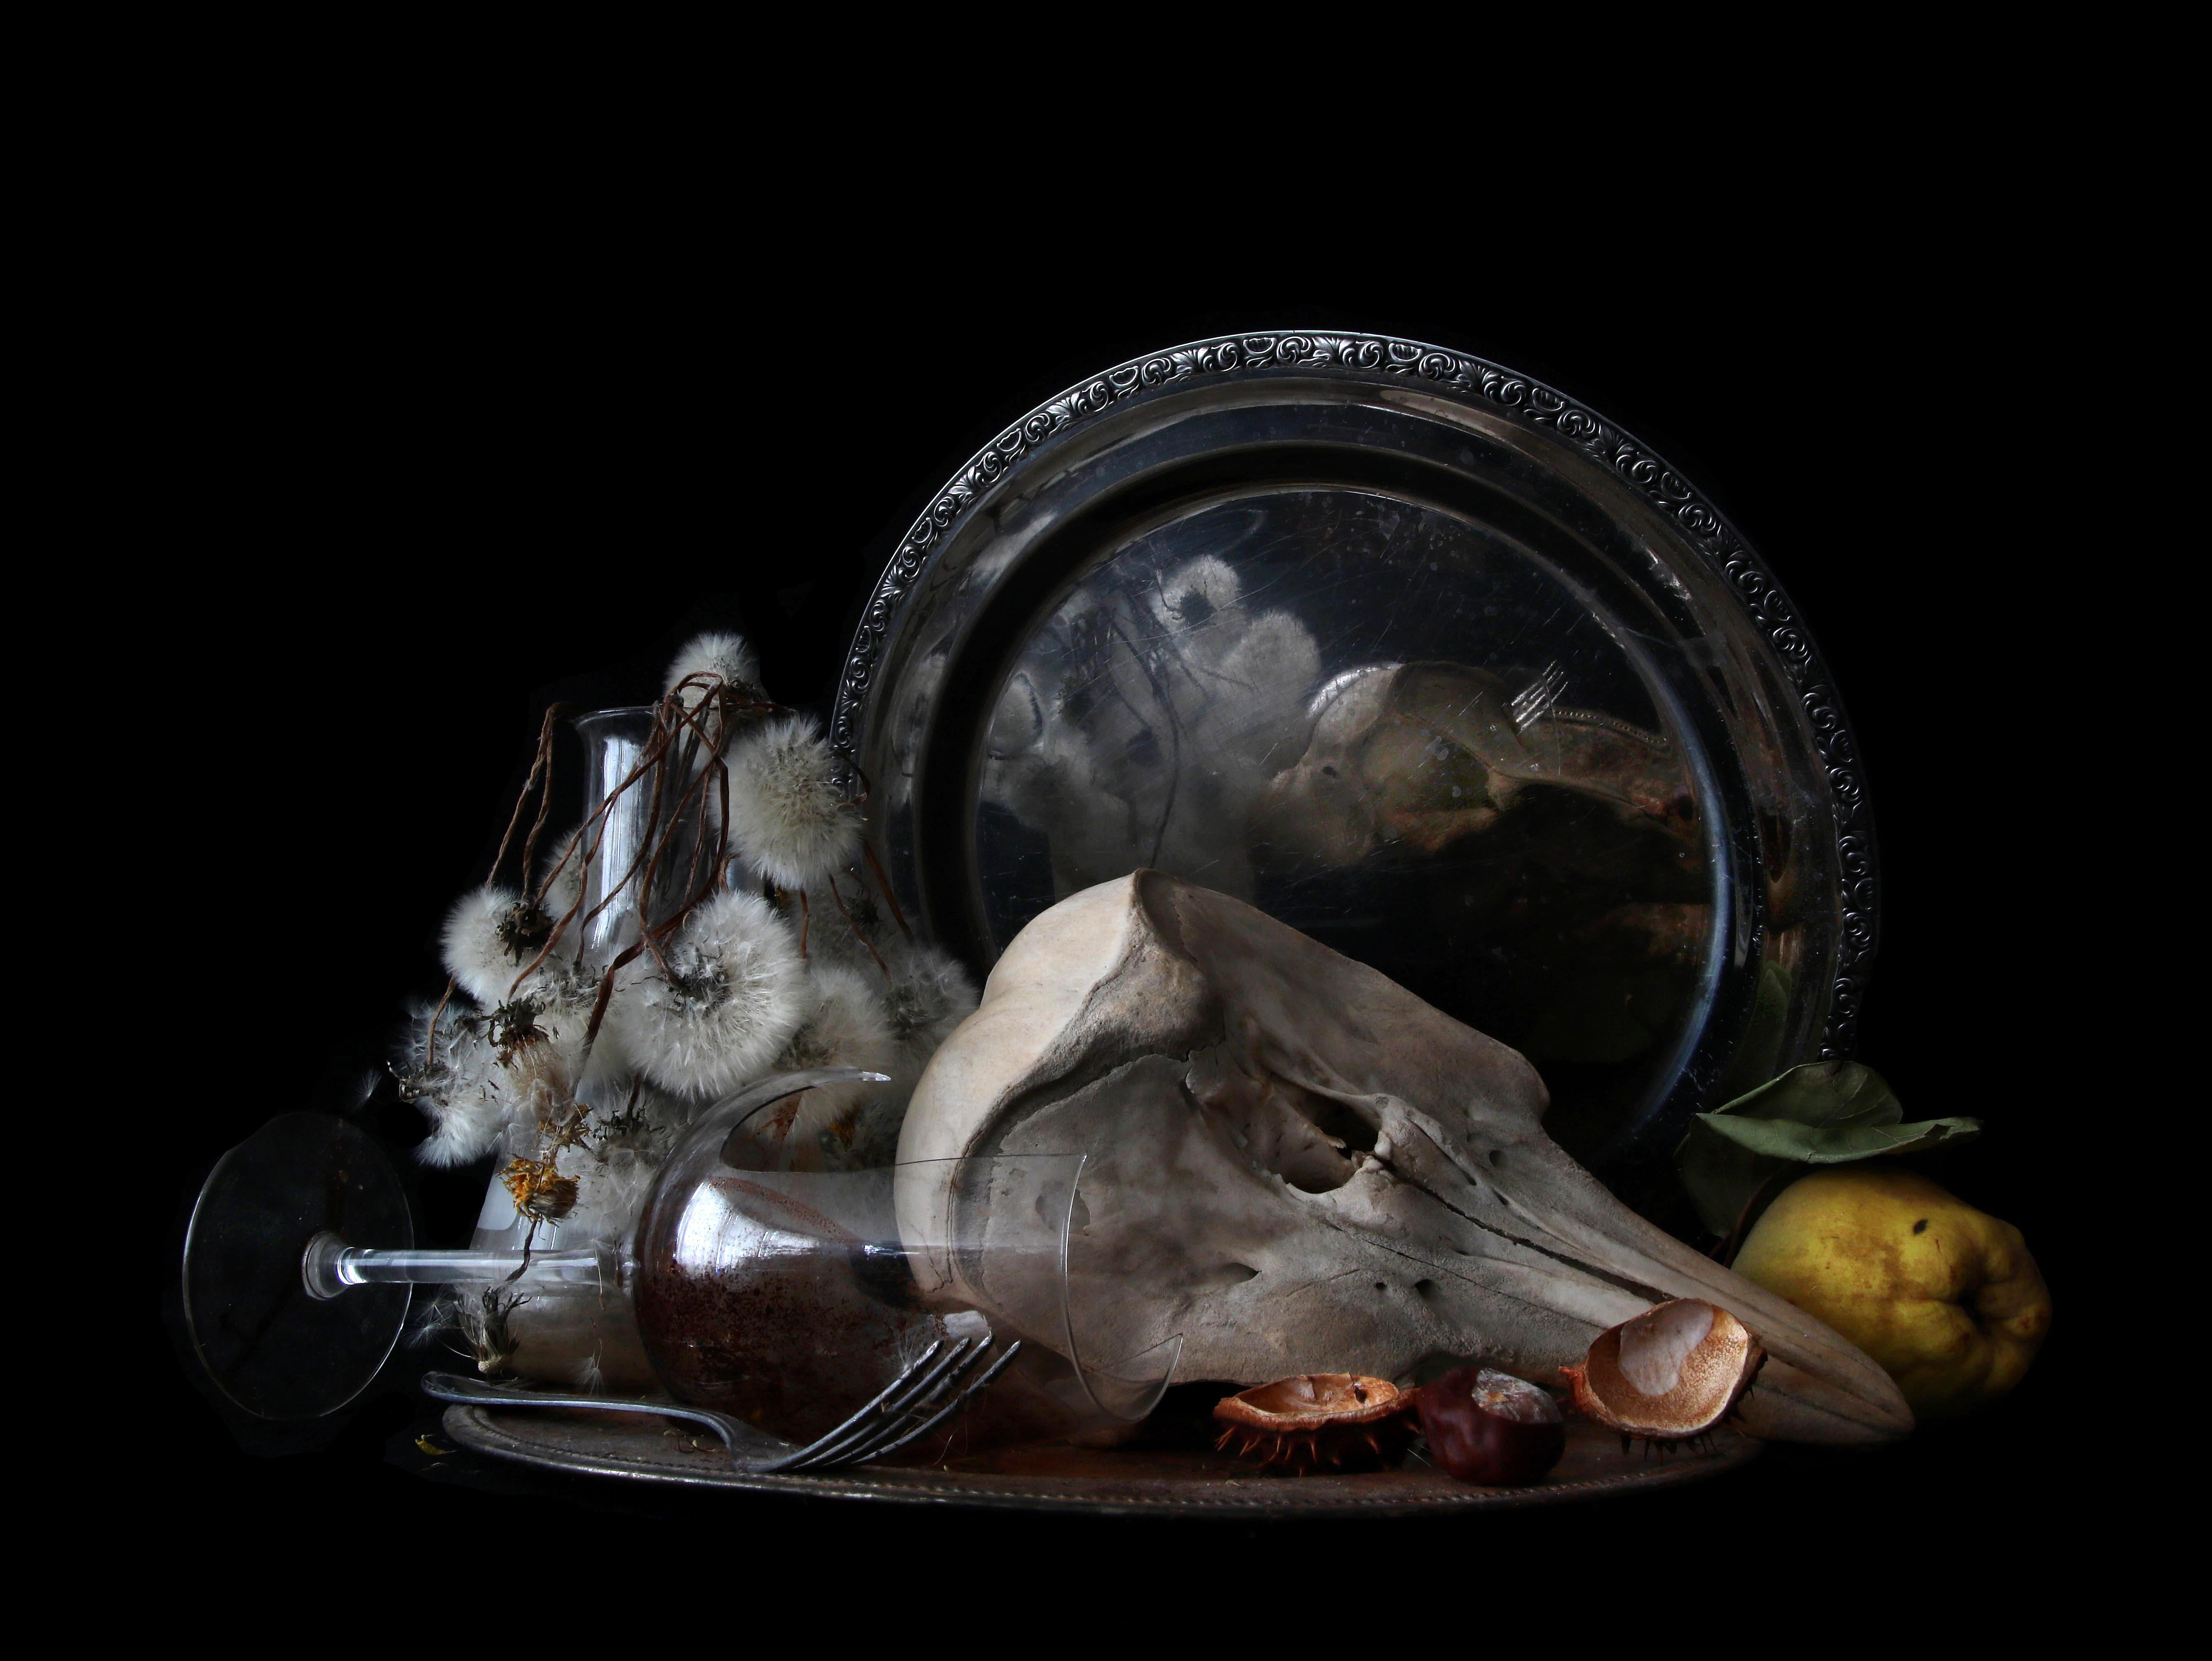 Aus der Serie "Natura Morte" Stillleben:
Das fotografische Bild der verwelkten Blumen, der verfaulten Früchte, der Tierknochen und der zerbrochenen Gläser scheint die Objekte zu konservieren, sie lebendig zu halten und sie so über den Tod hinaus zu